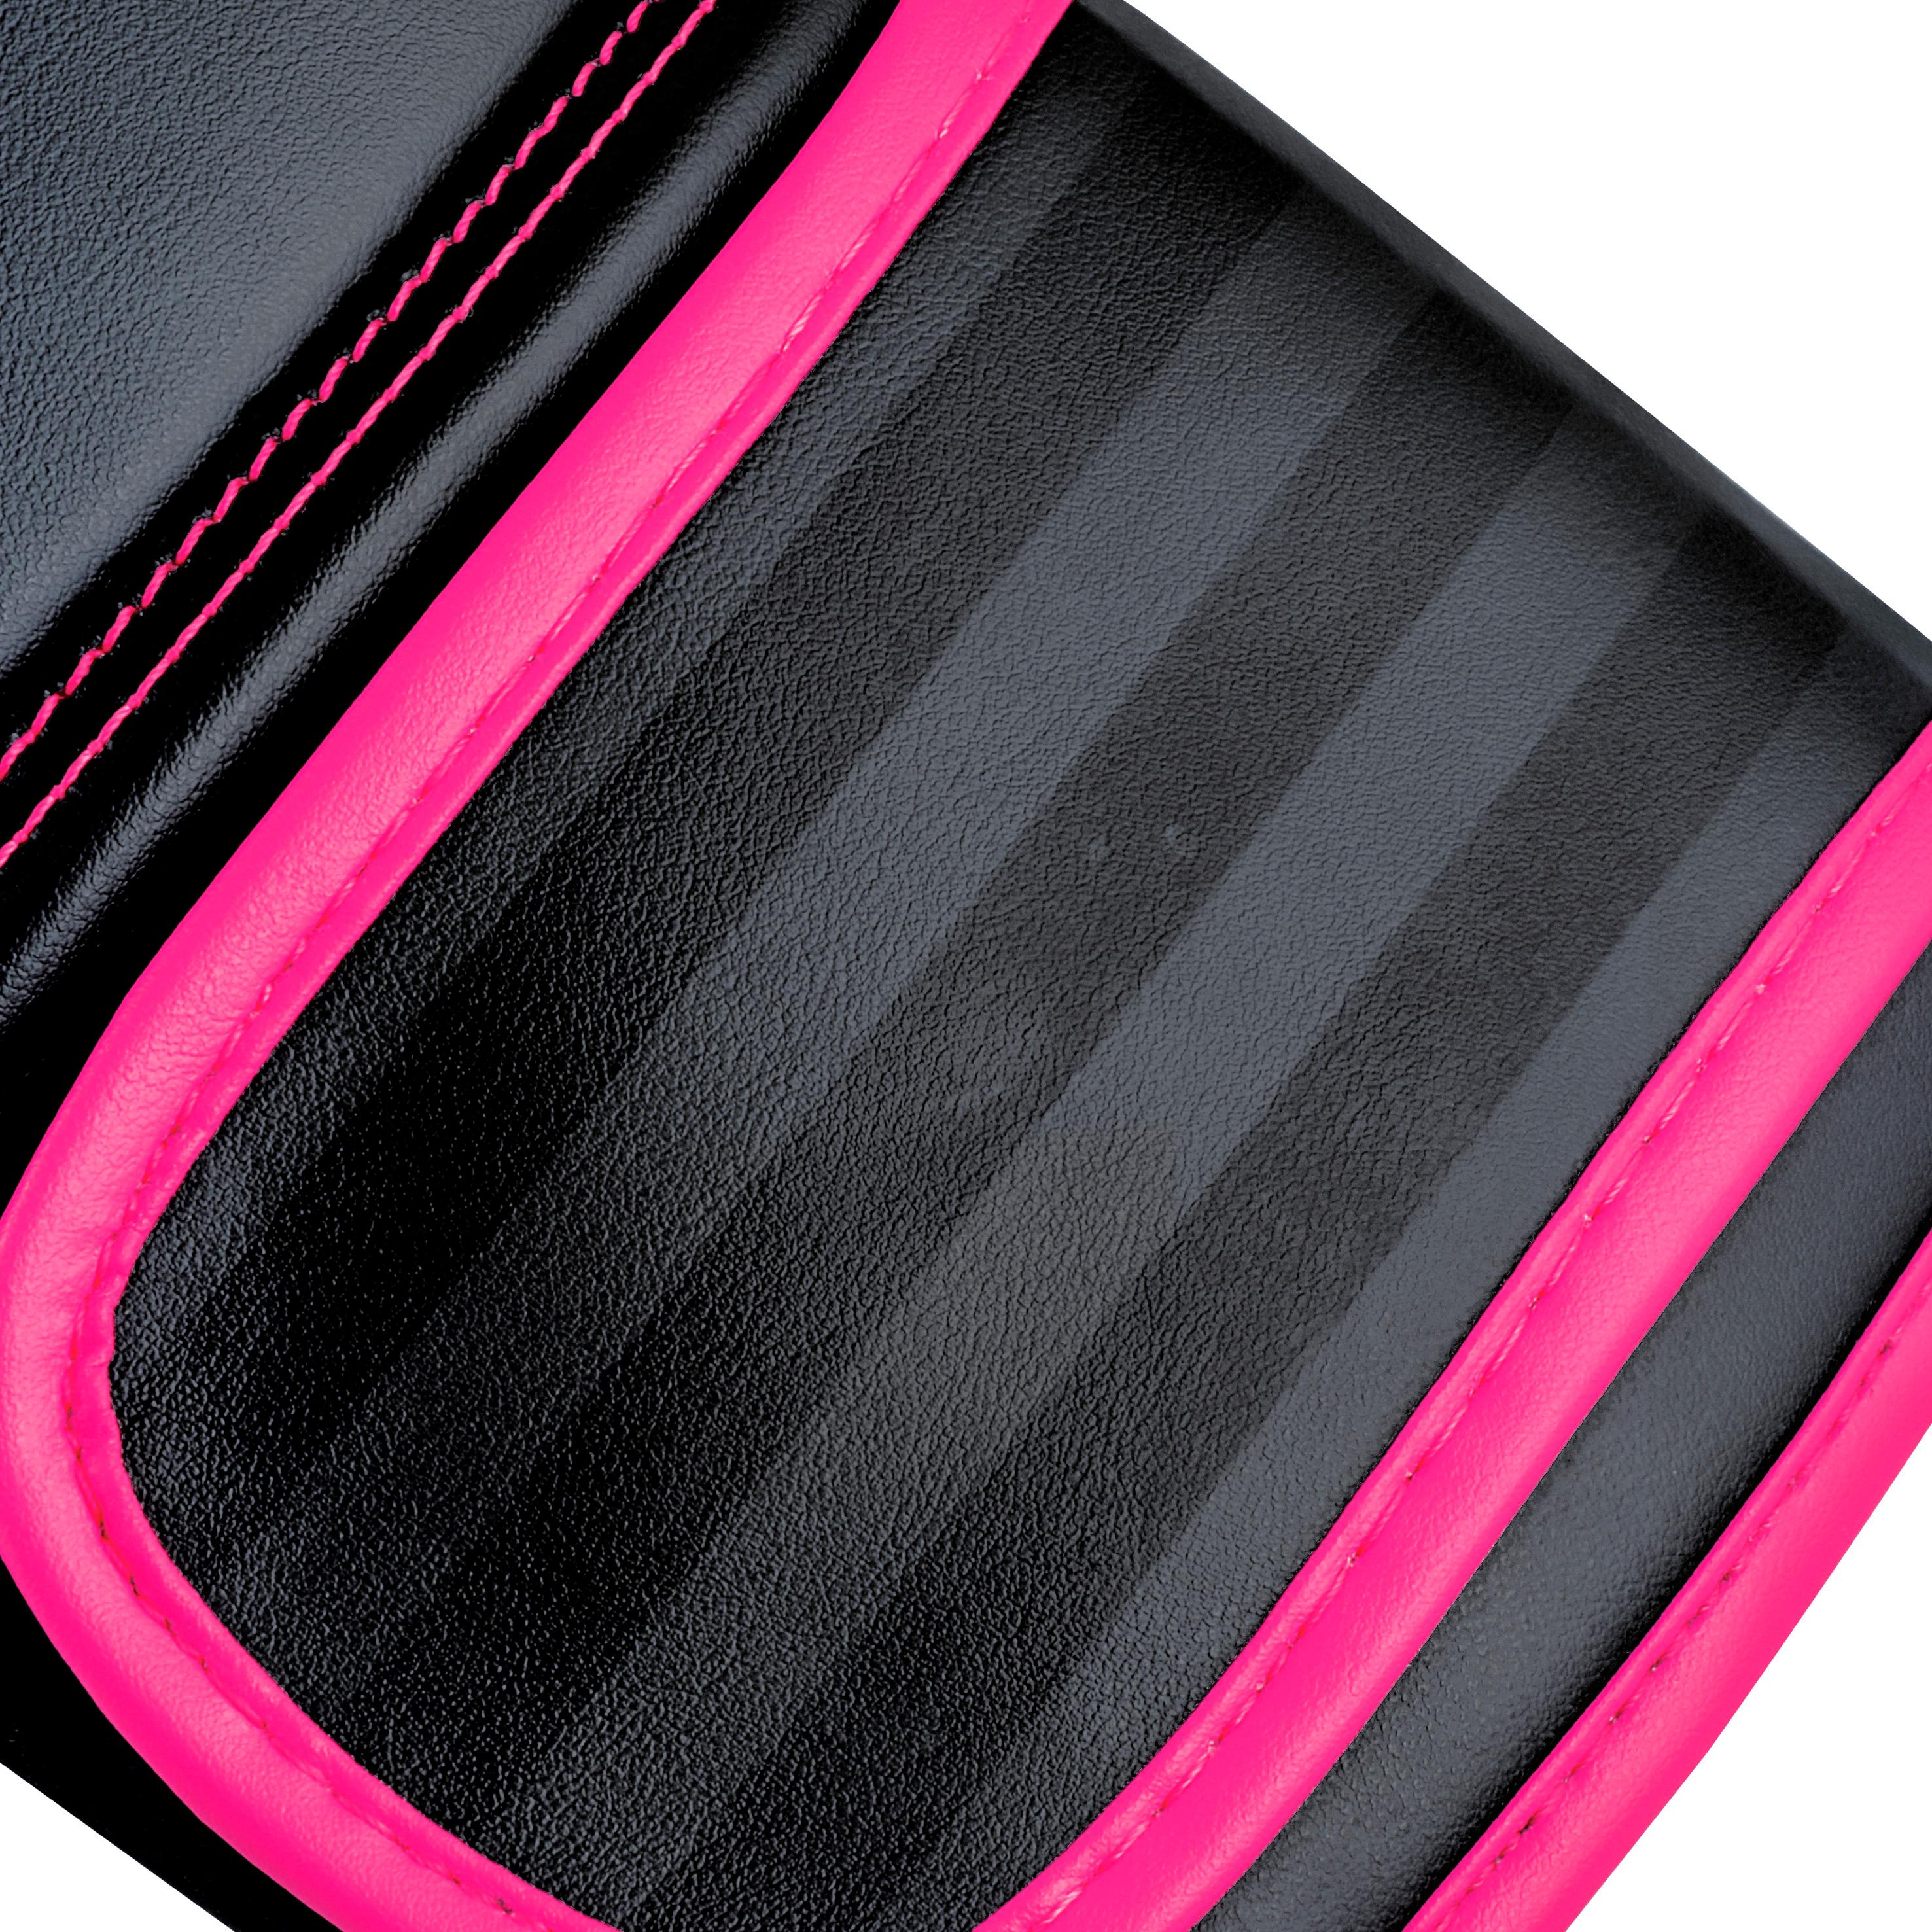 80 SportScheck im Adidas Boxhandschuhe von Hybrid Shop schwarz-pink kaufen Online